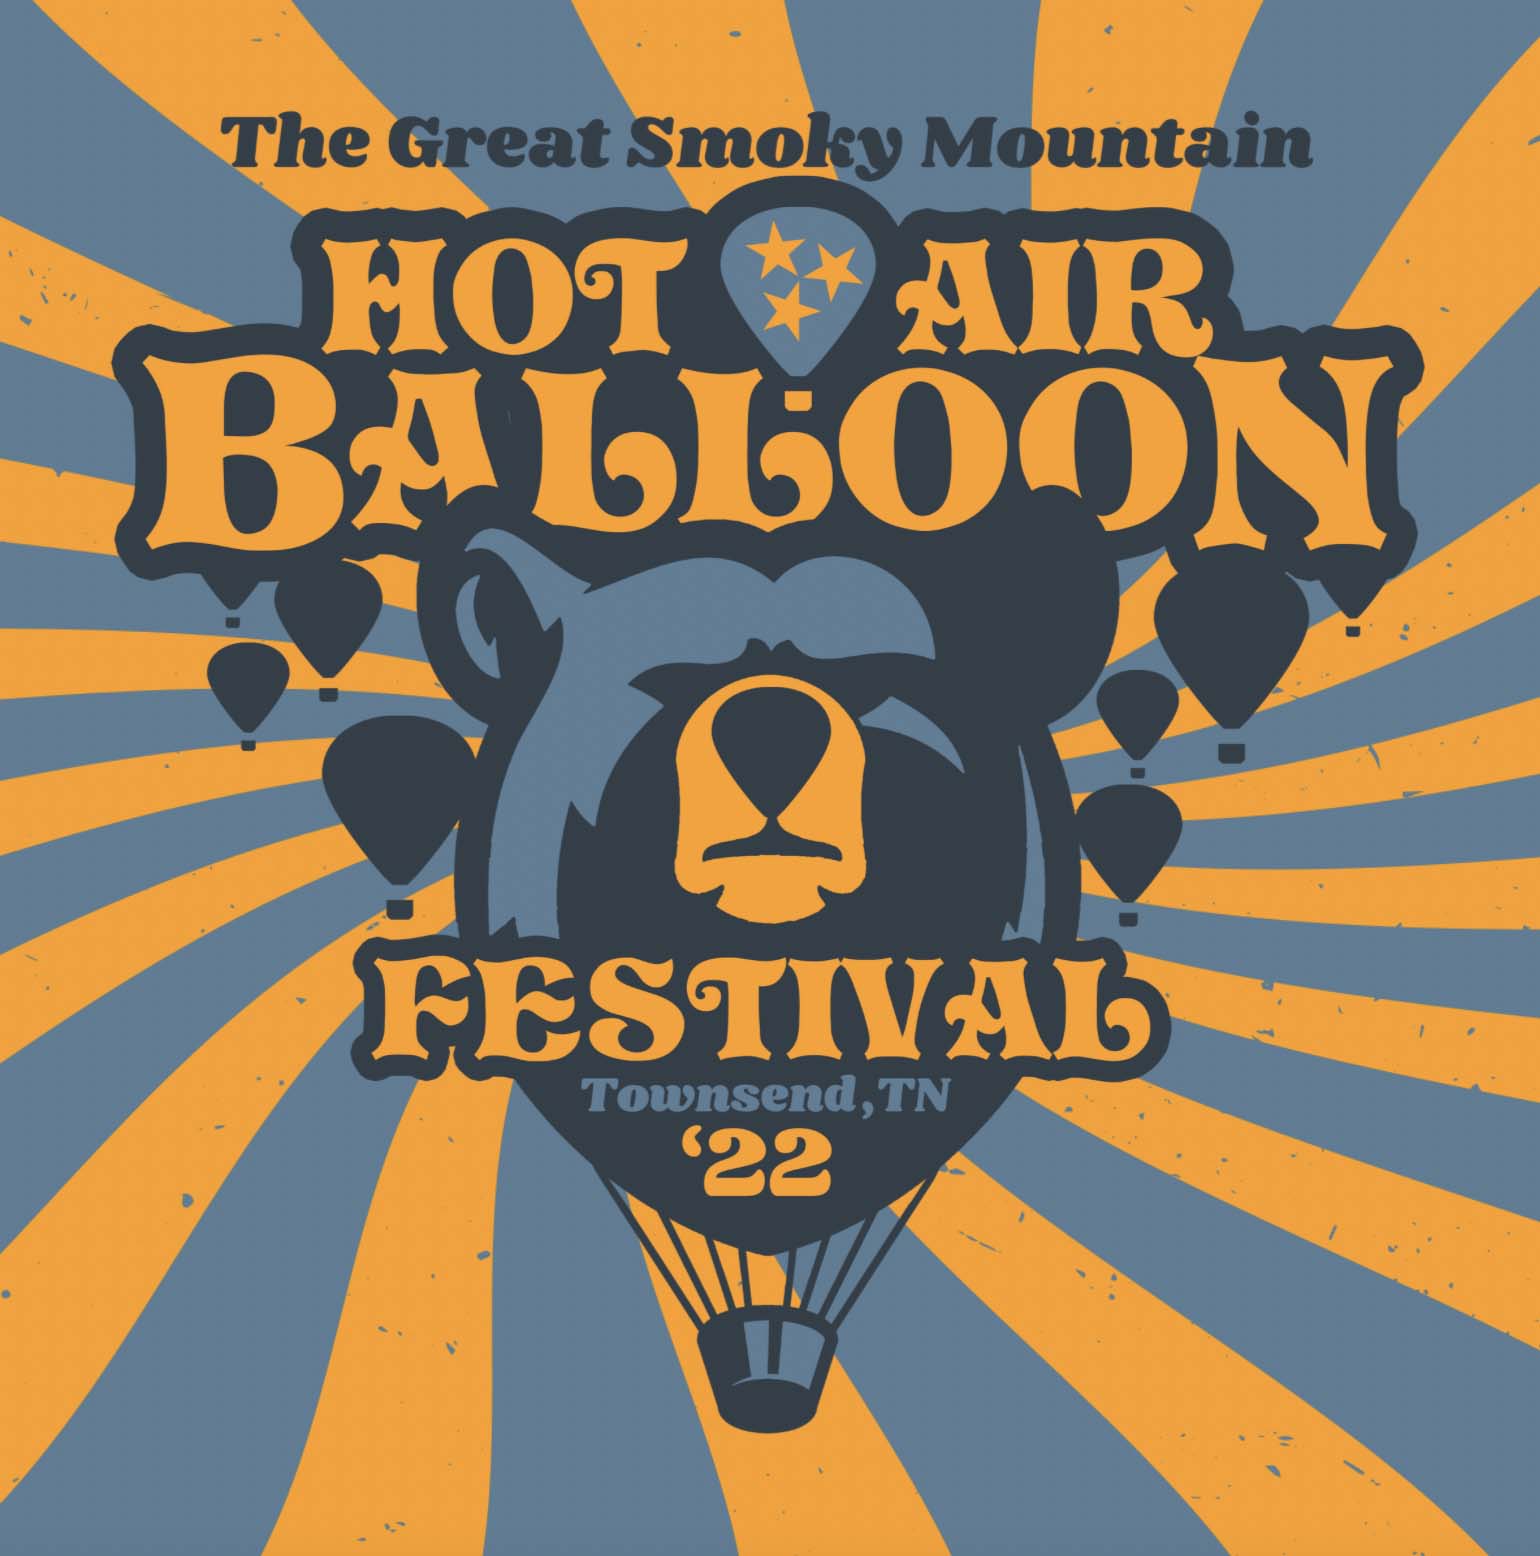 Great Smoky Mountain Hot Air Balloon